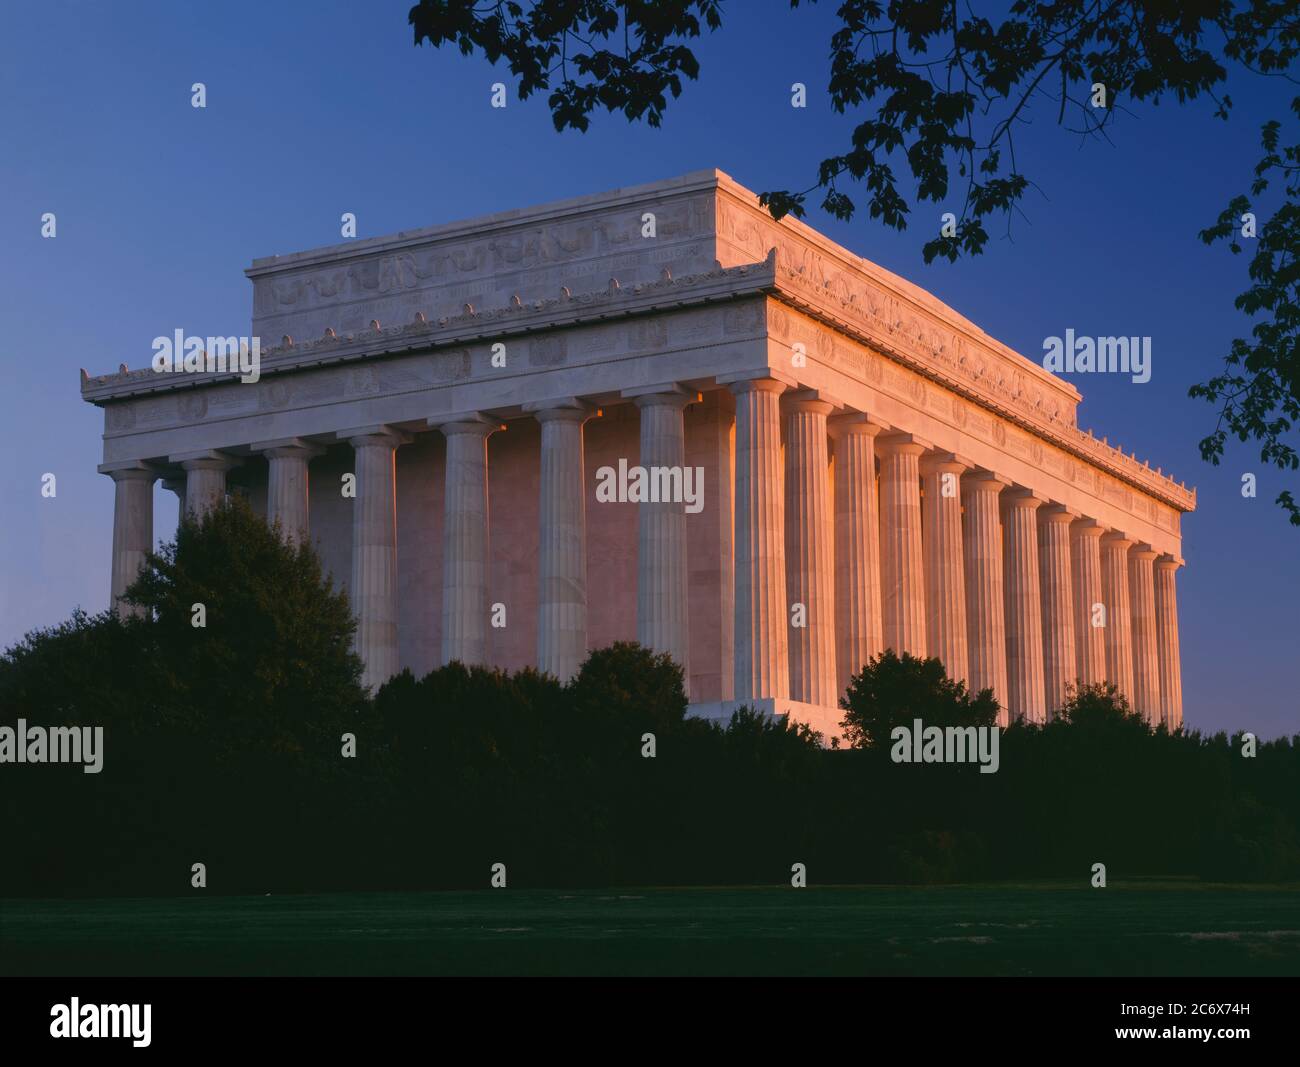 Washington D.C./APR das erste Licht erwärmt die Säulen des Lincoln Memorial, das am westlichen Ende der Mall steht. Dieses Gebäude wurde von Hen entworfen Stockfoto